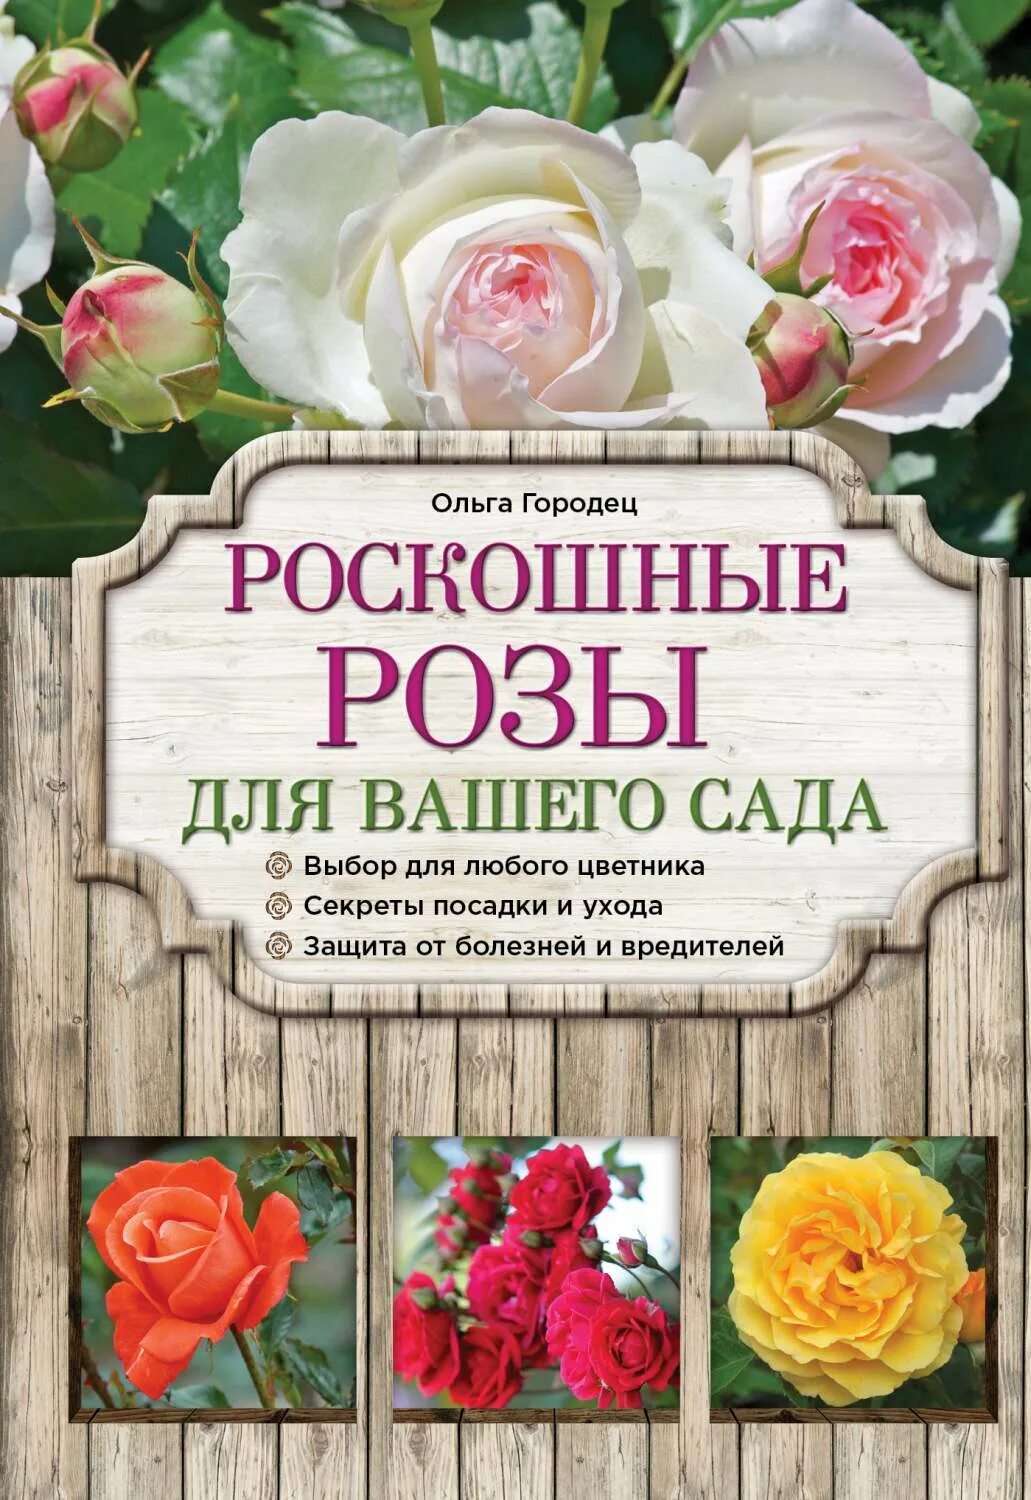 Книга про розы. "Книга" "цветы в саду". Книга розы в вашем саду. Розы для вашего сада.